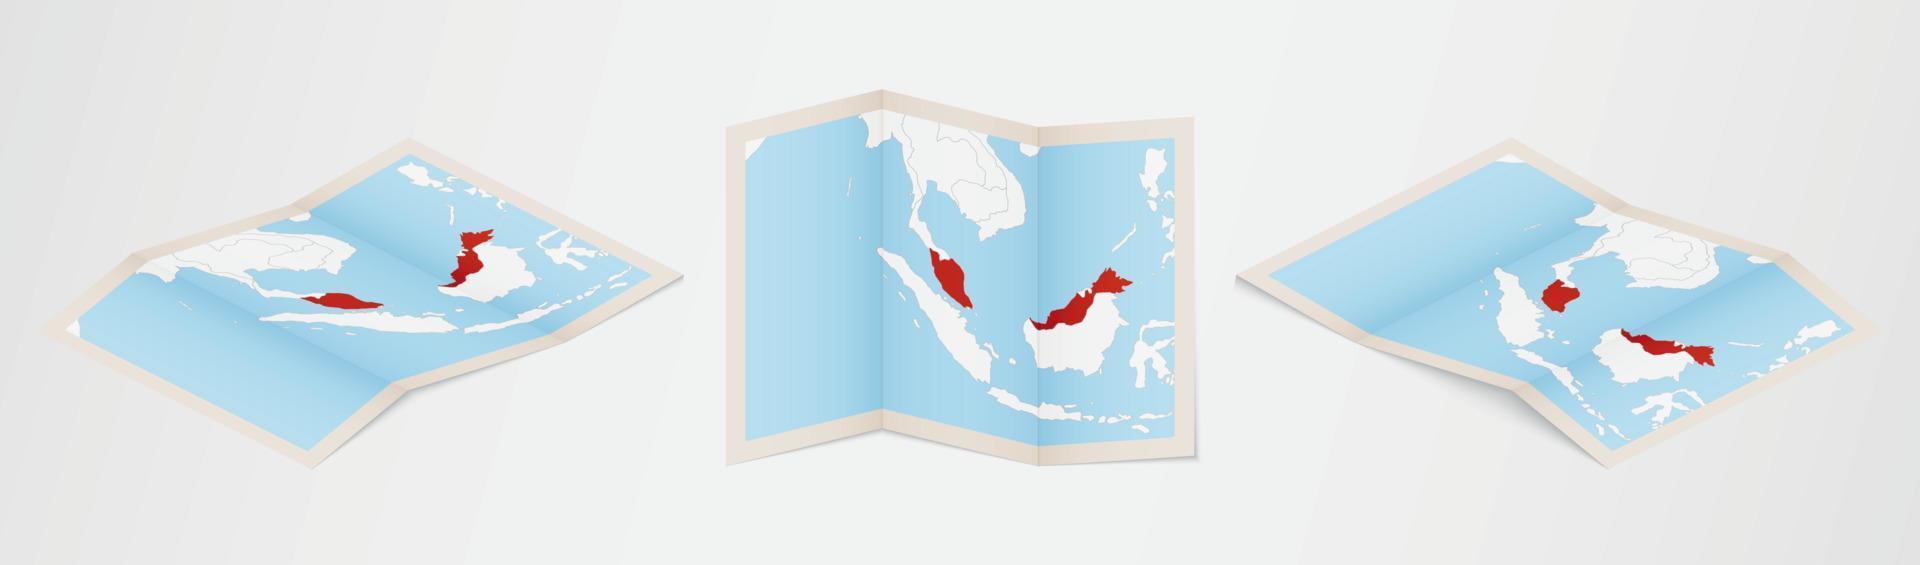 mapa plegado de malasia en tres versiones diferentes. vector